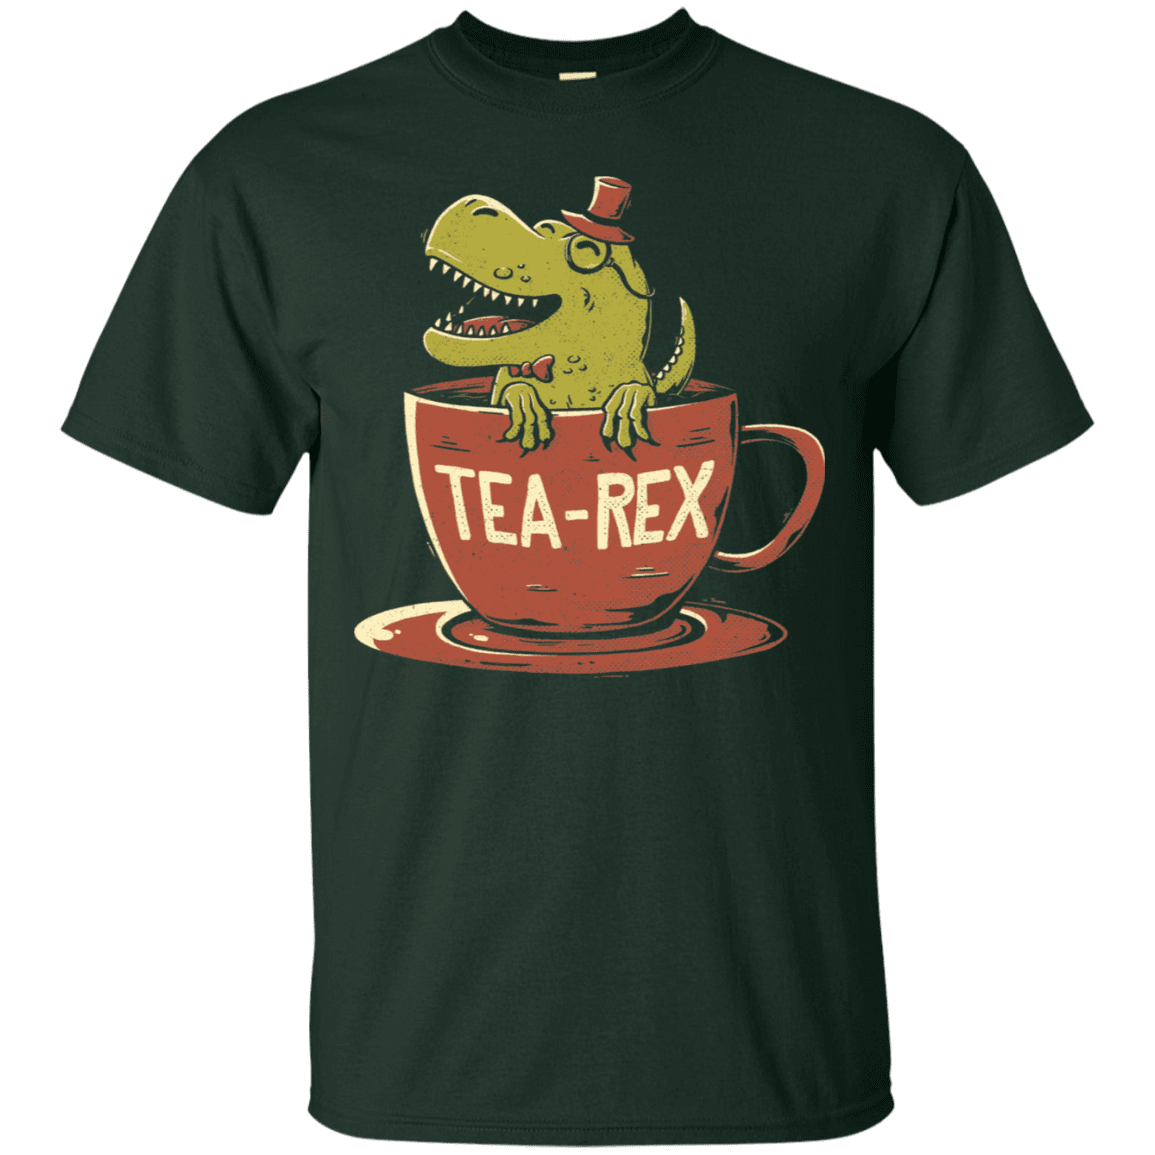 T-Shirts Forest / S Tea-Rex T-Shirt